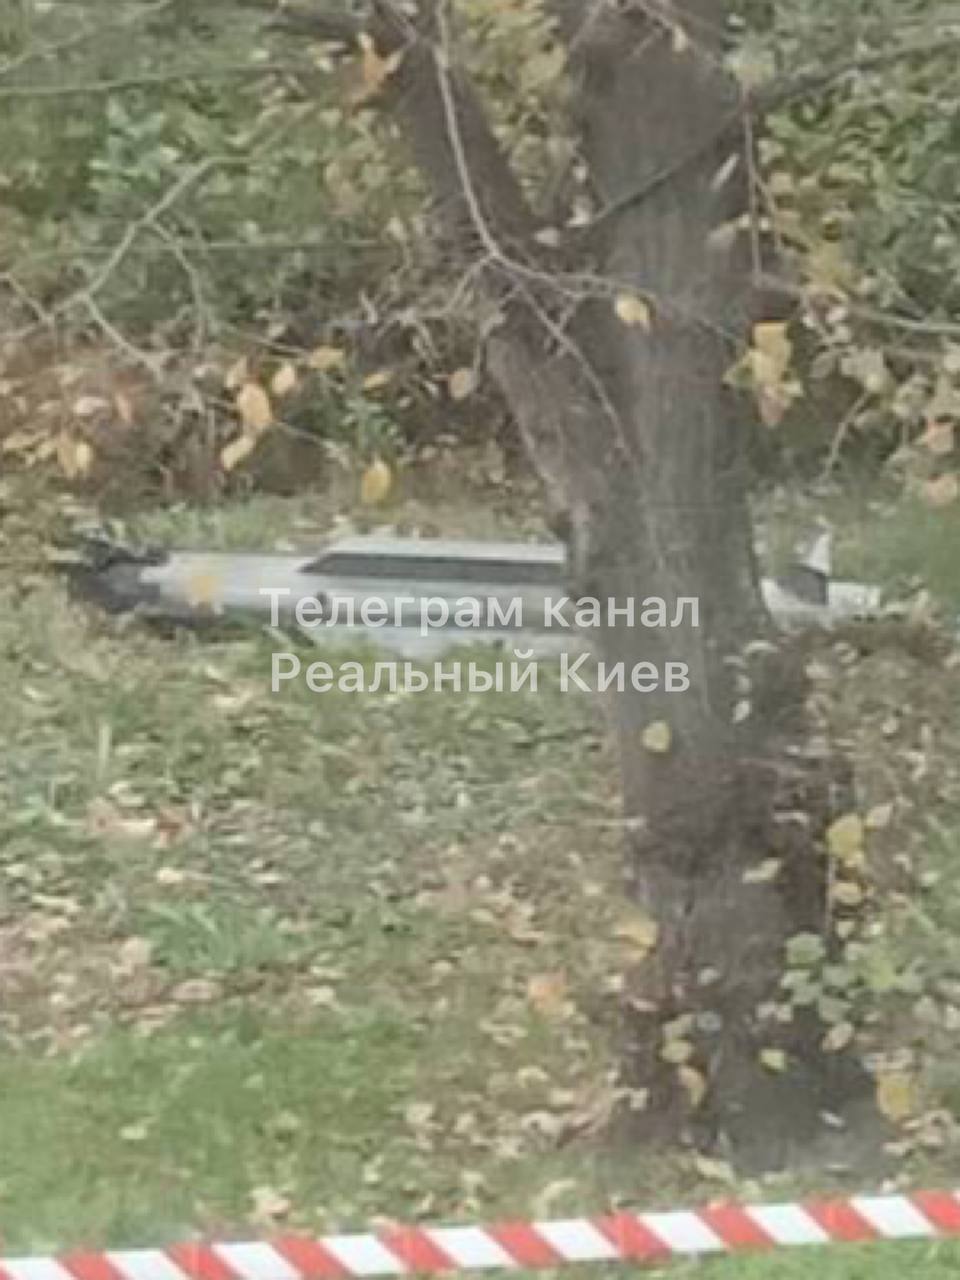 Обломки сбитой ракеты в одном из дворов Киева